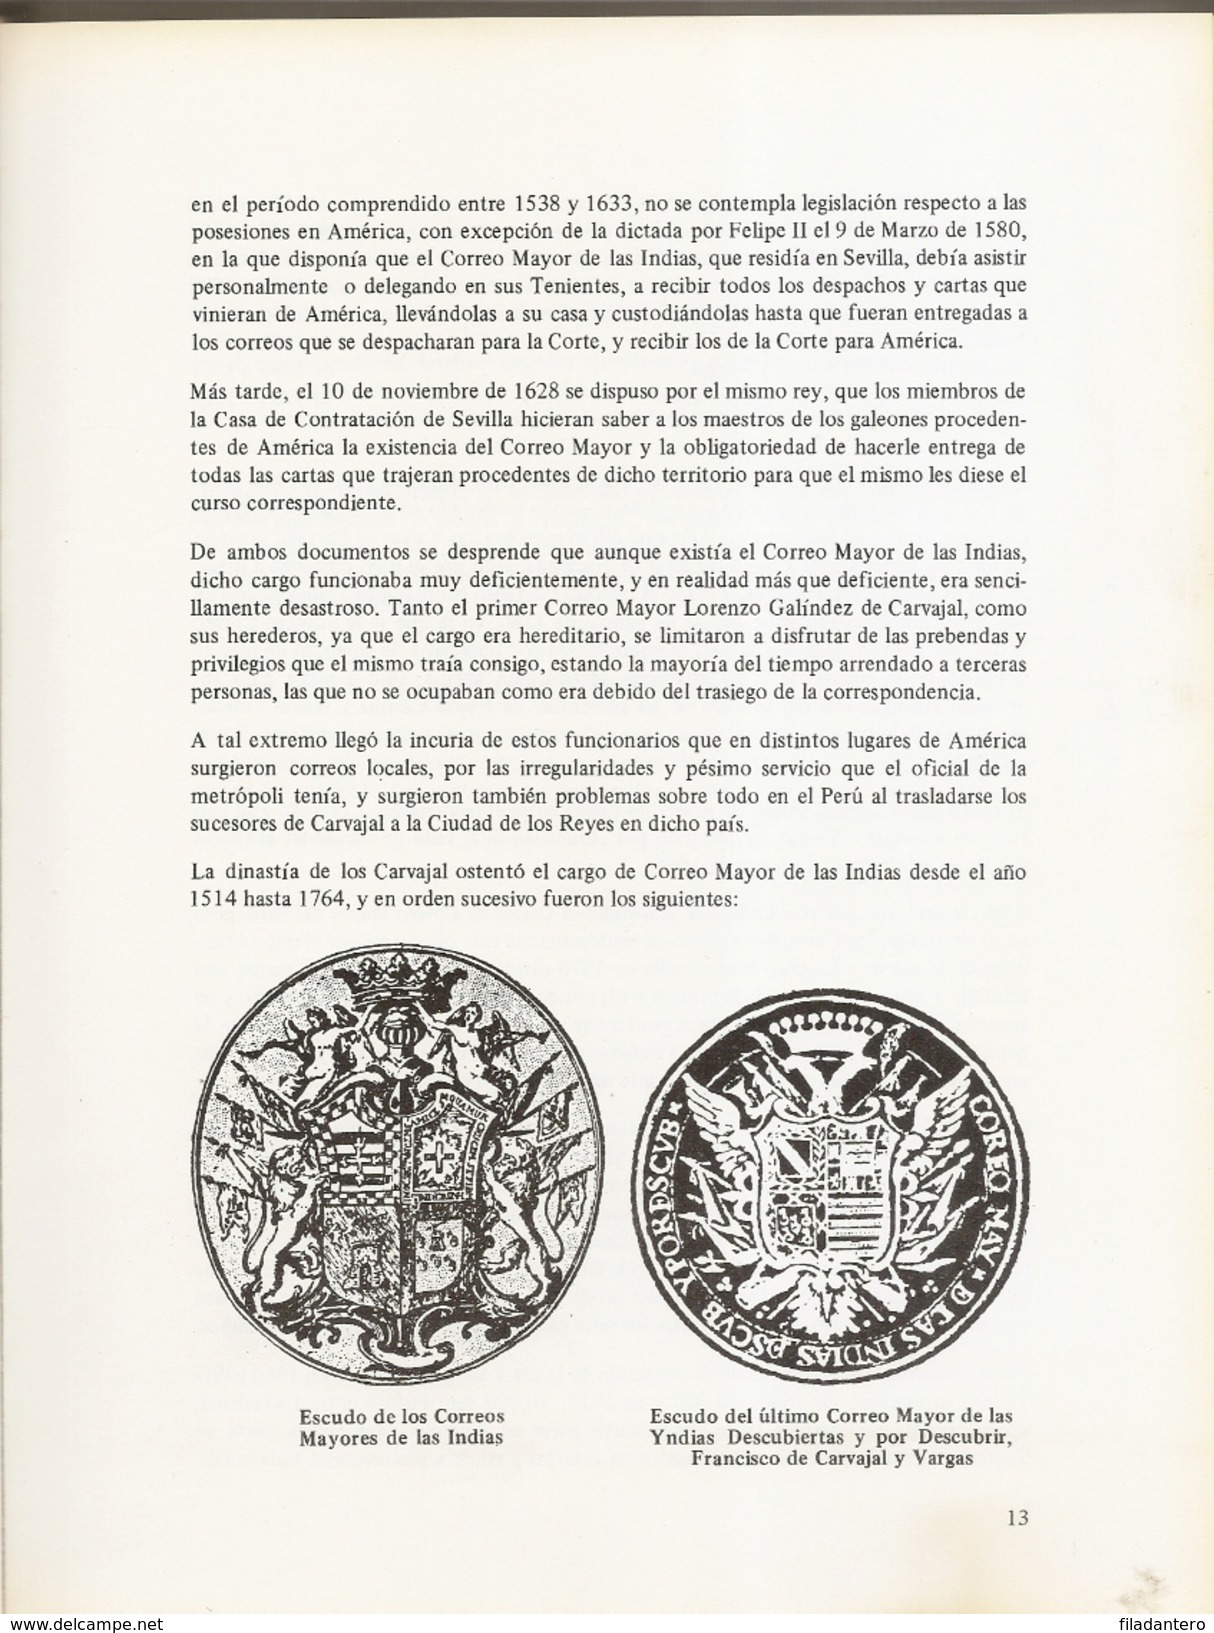 Historia Postal De Cuba  Tirada 1000 Ejemplares JL Guerra Aguilar  1983 - Philately And Postal History